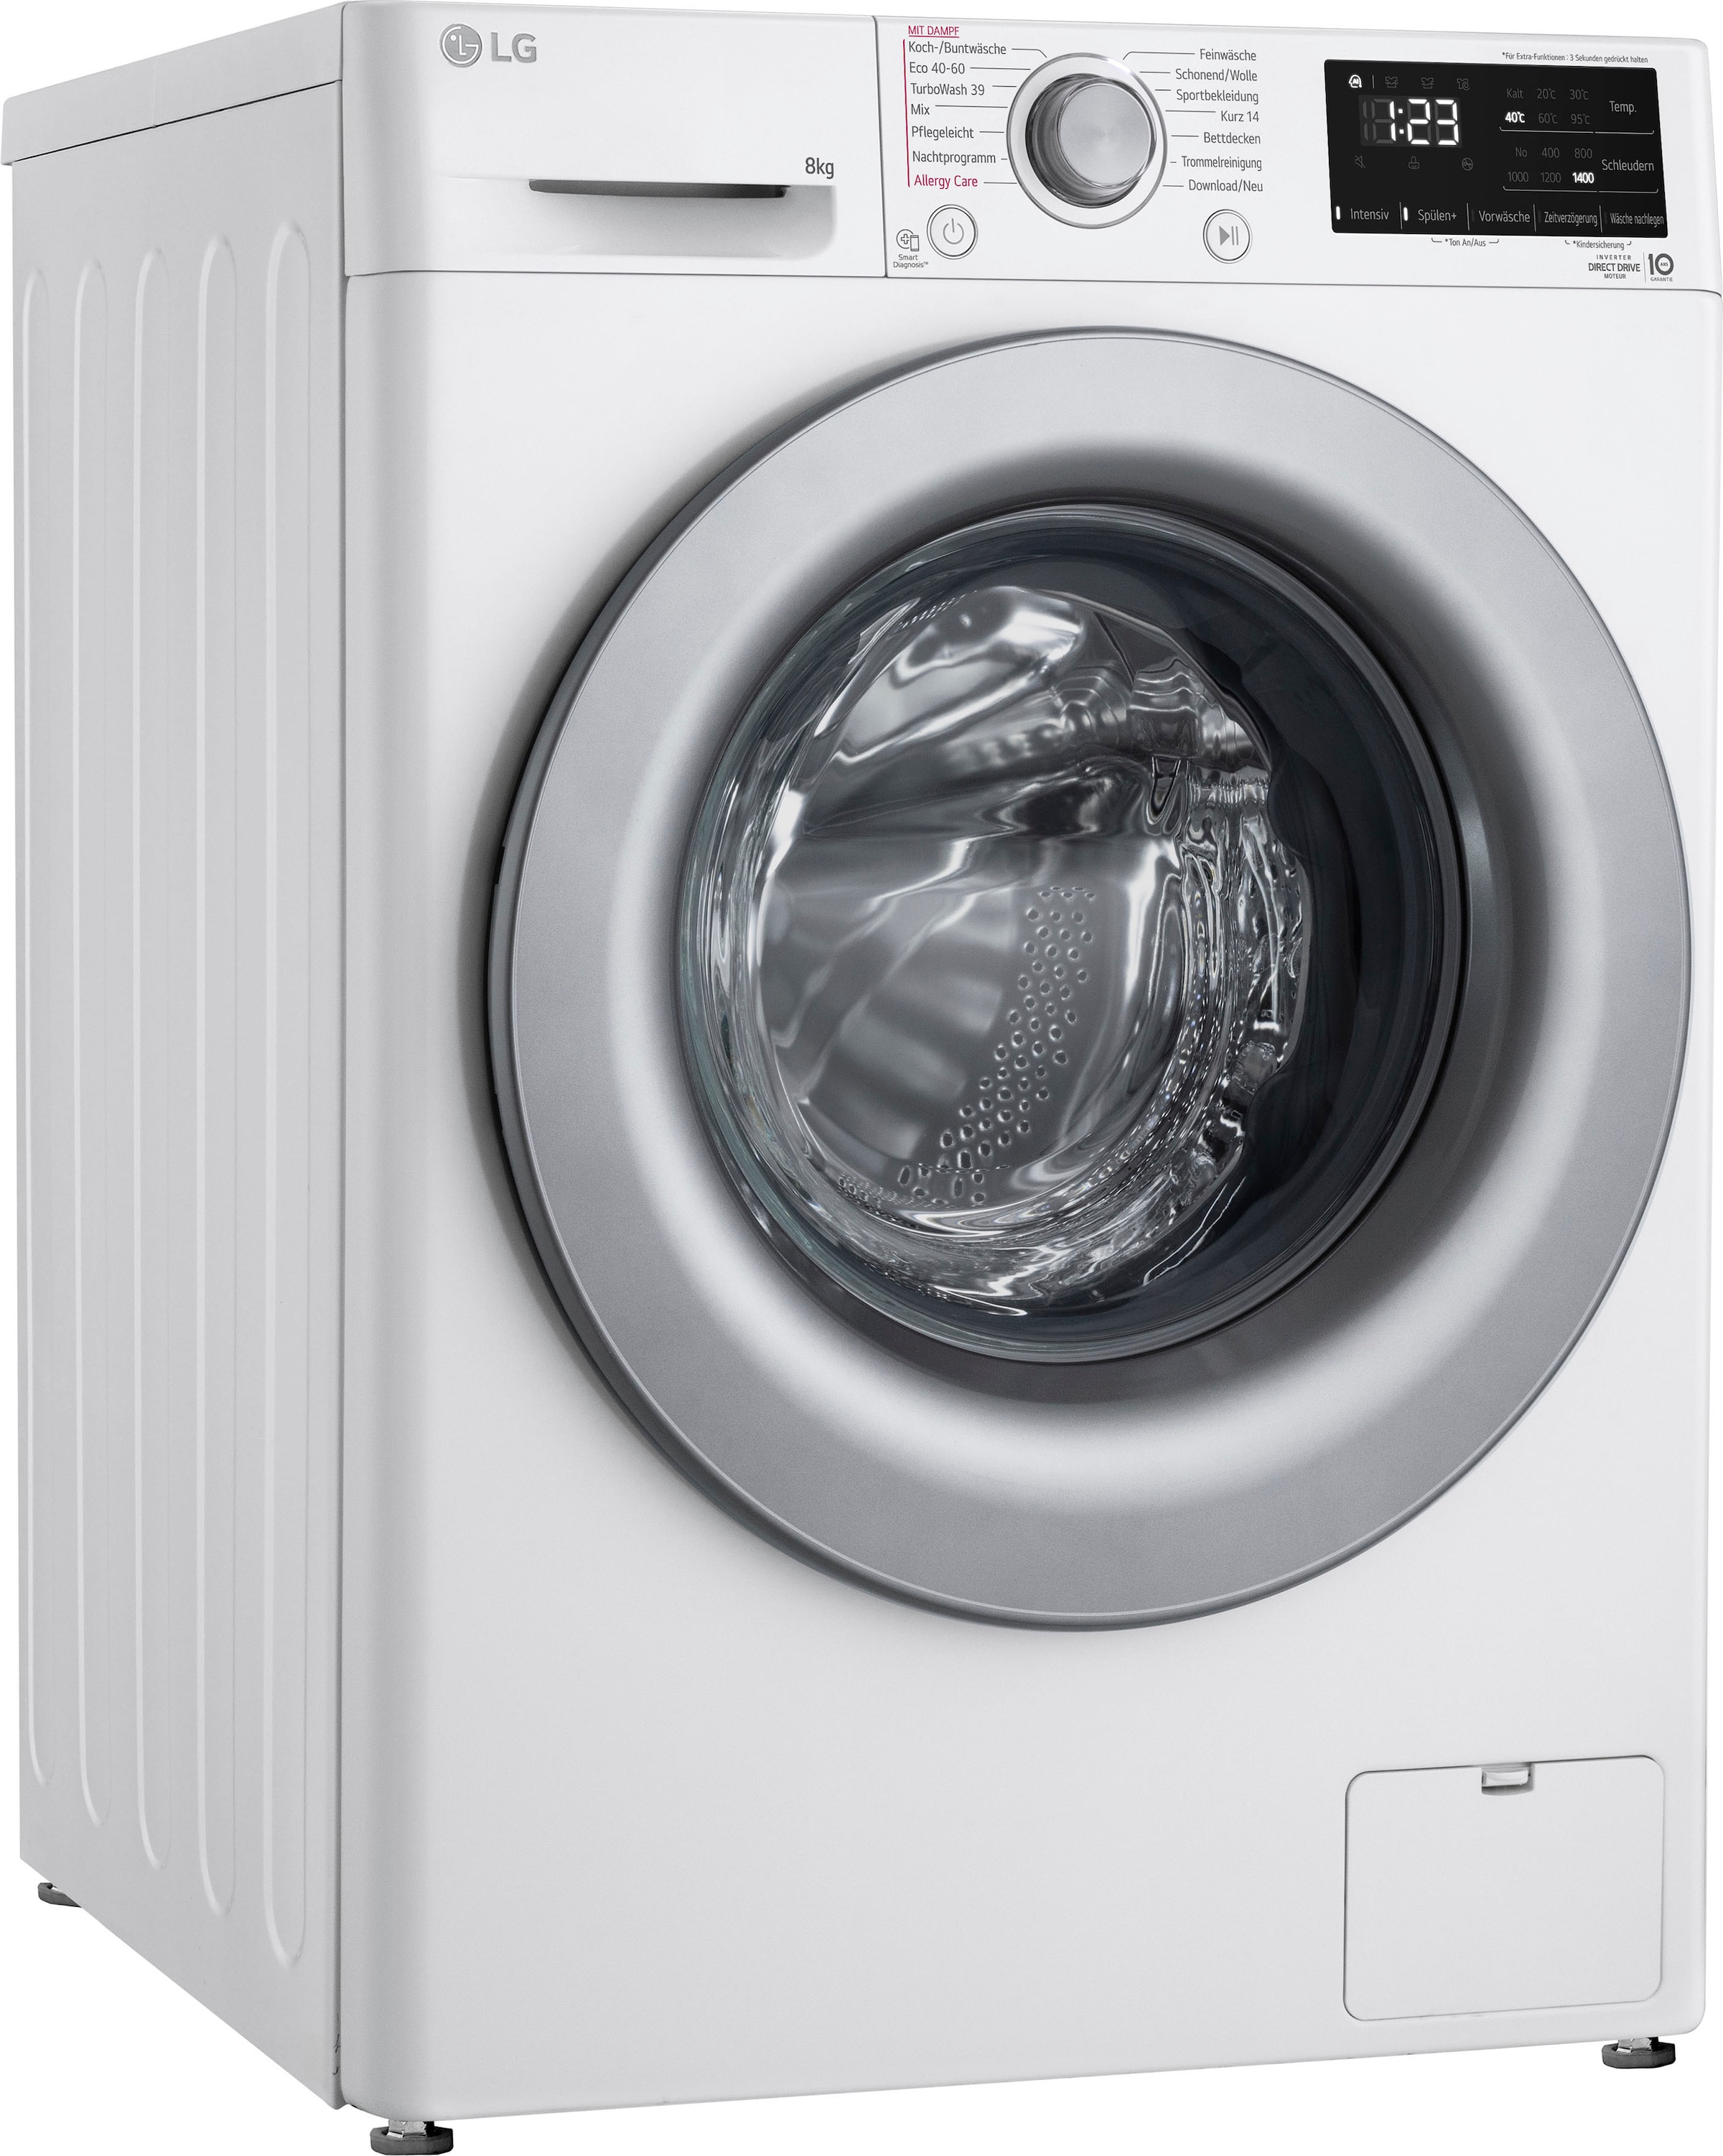 LG Waschmaschine »F4WV3284«, Serie 3, kg, U/min bei OTTO 8 1400 F4WV3284, bestellen